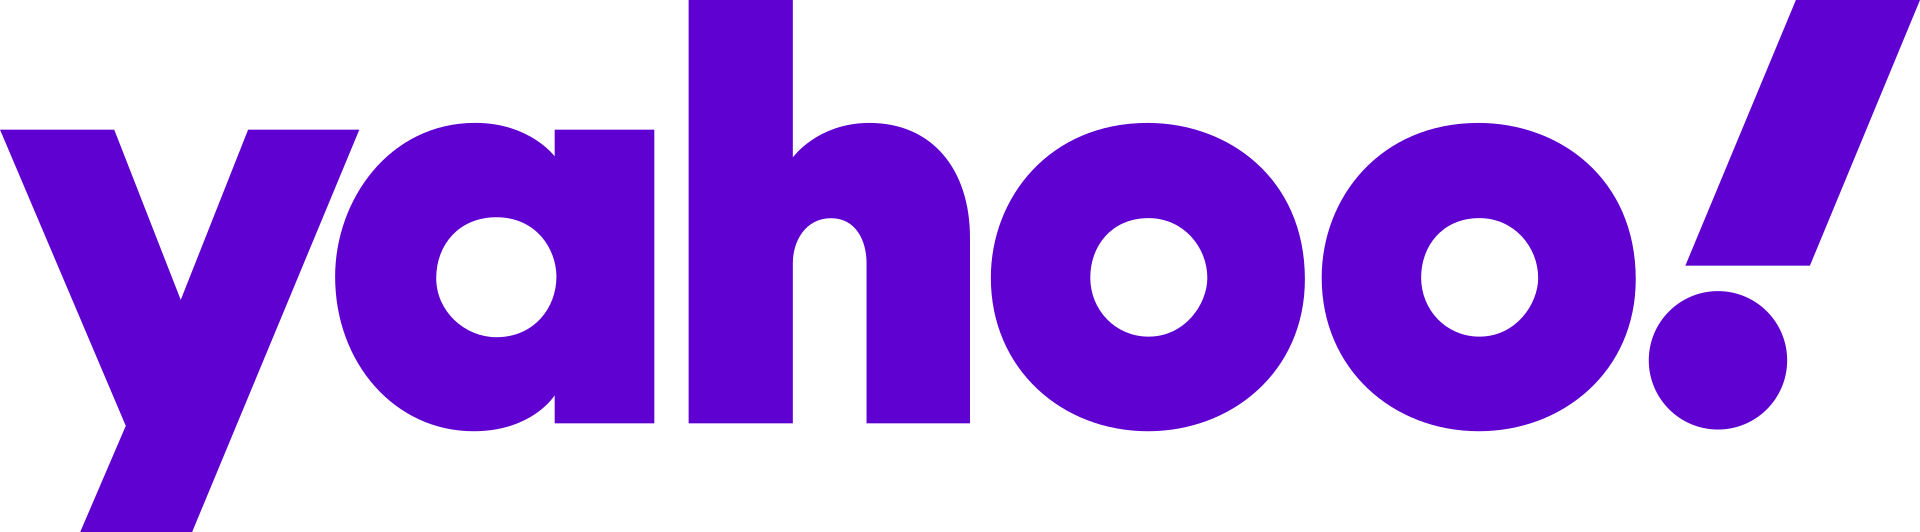 Логотип Yahoo!